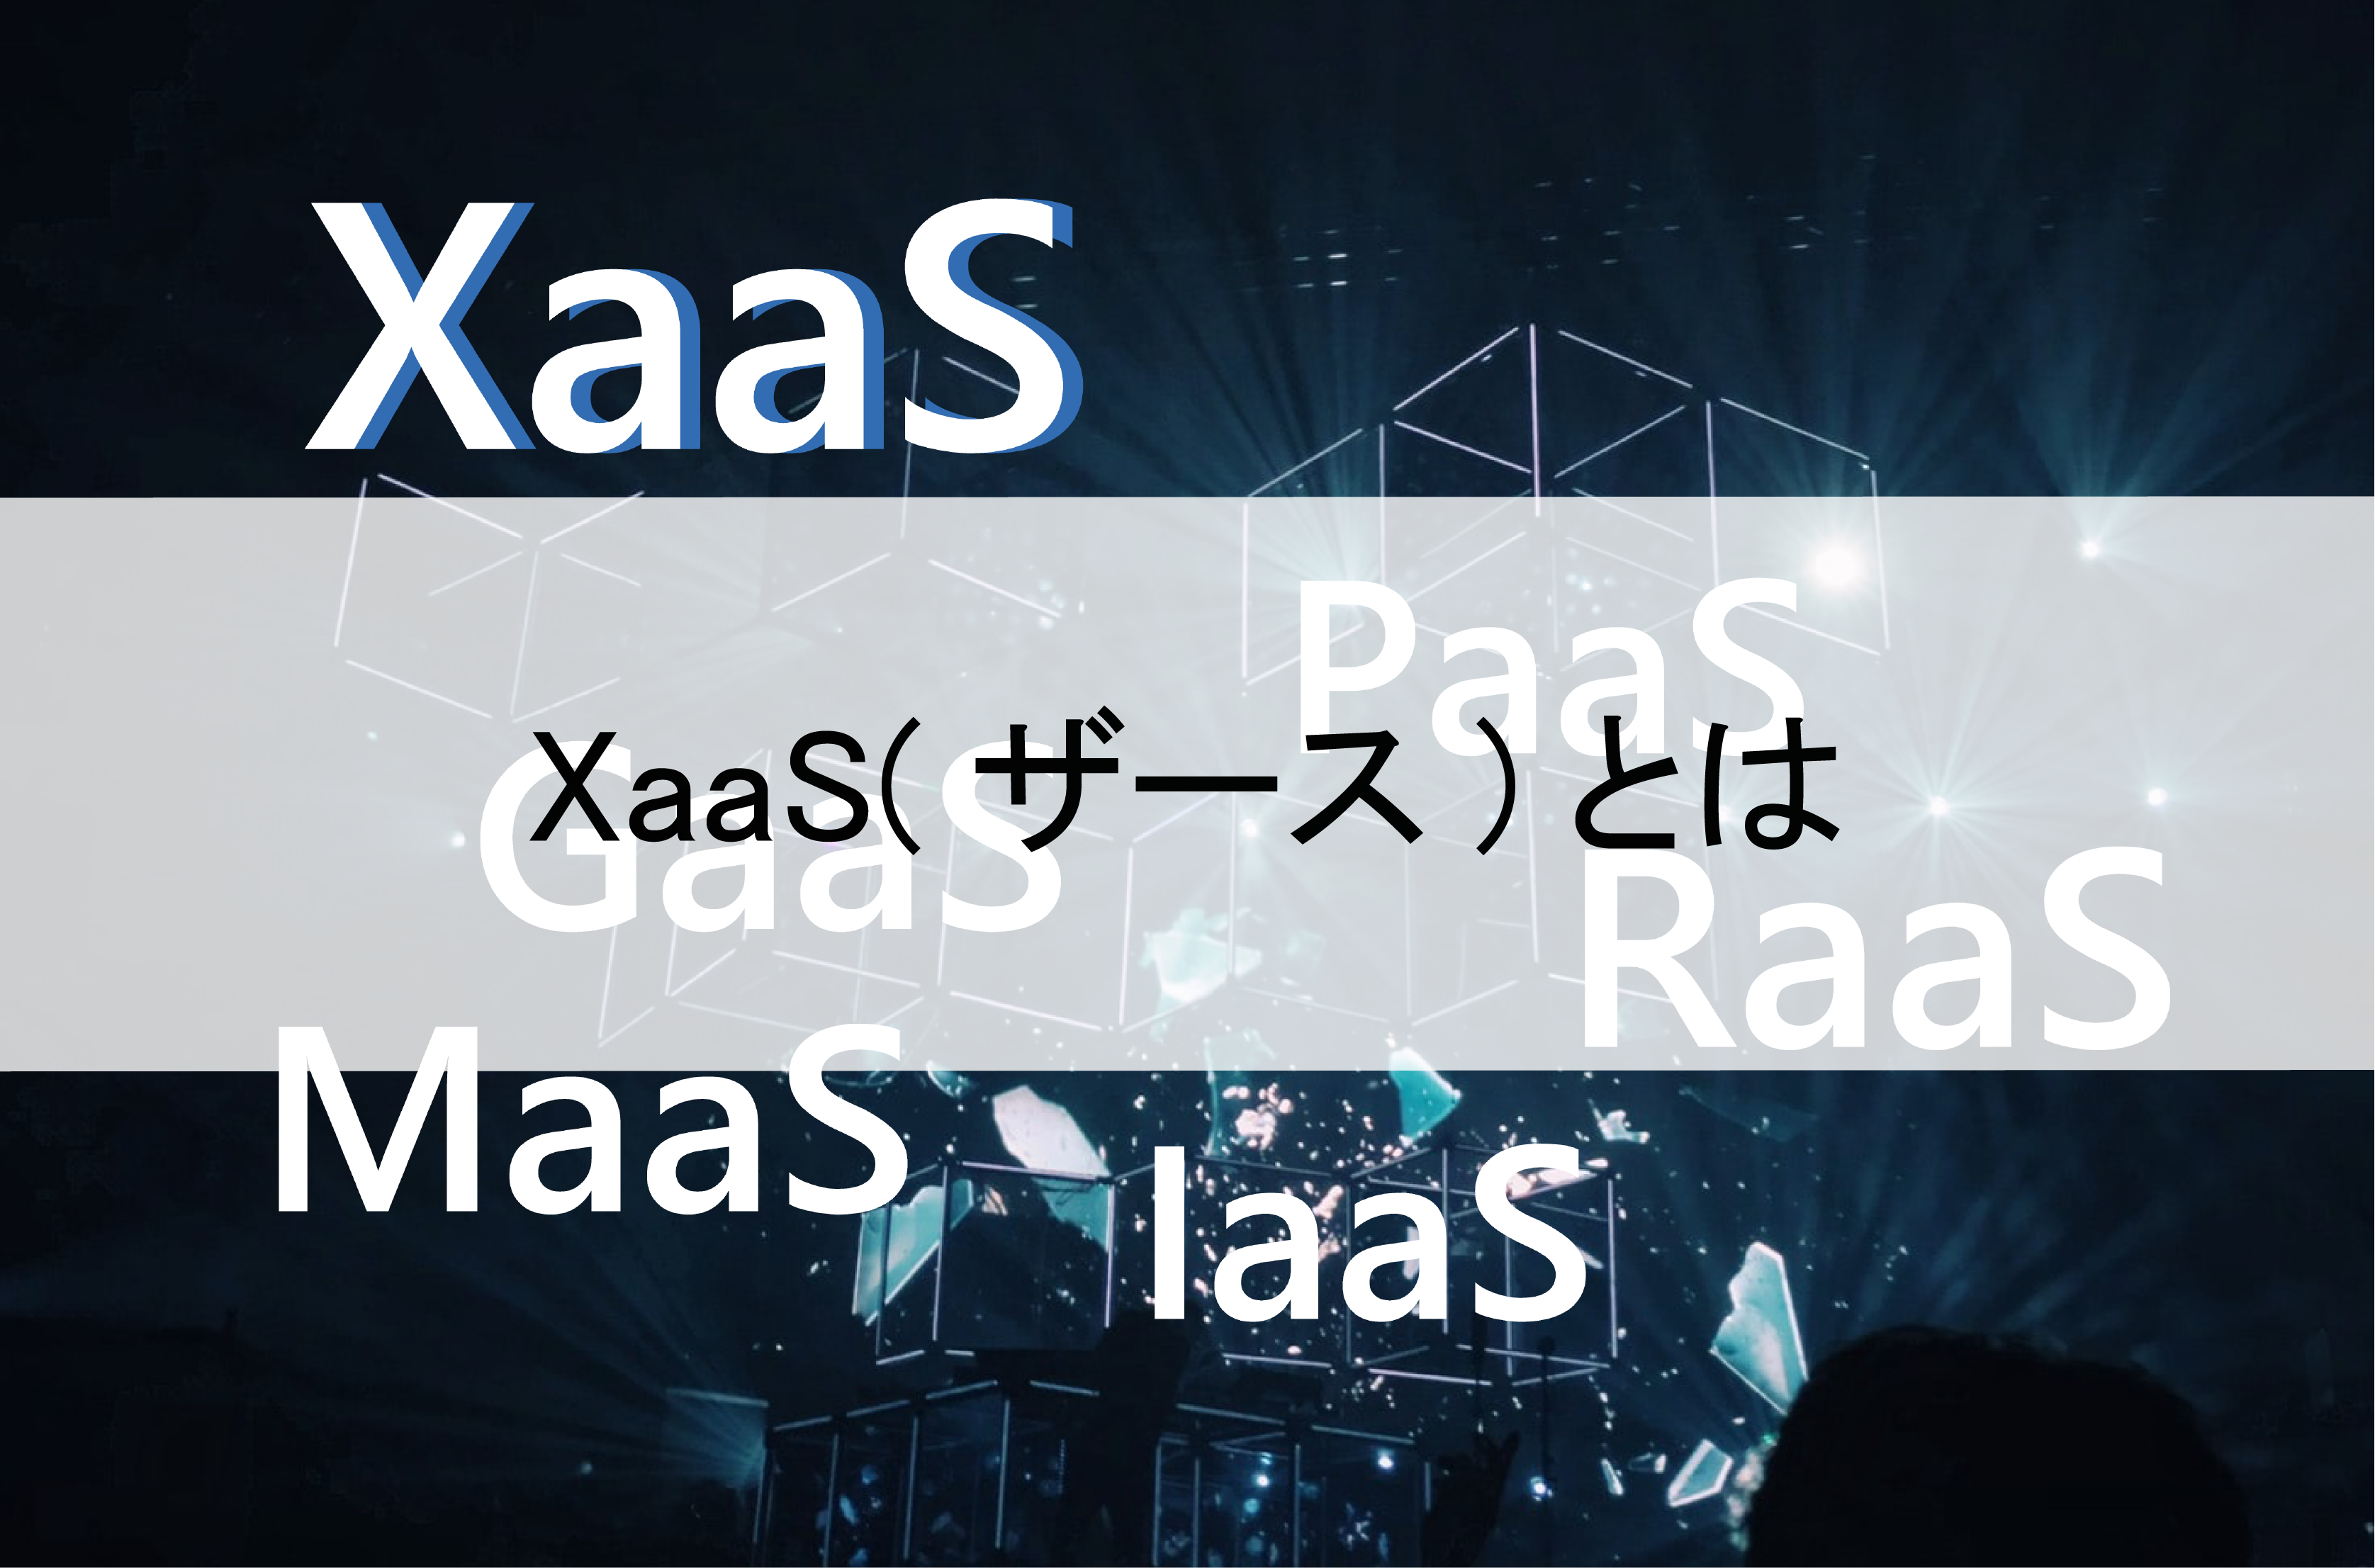 「XaaS(ザース)」とは、顧客が求める「コト」を実現するサービス